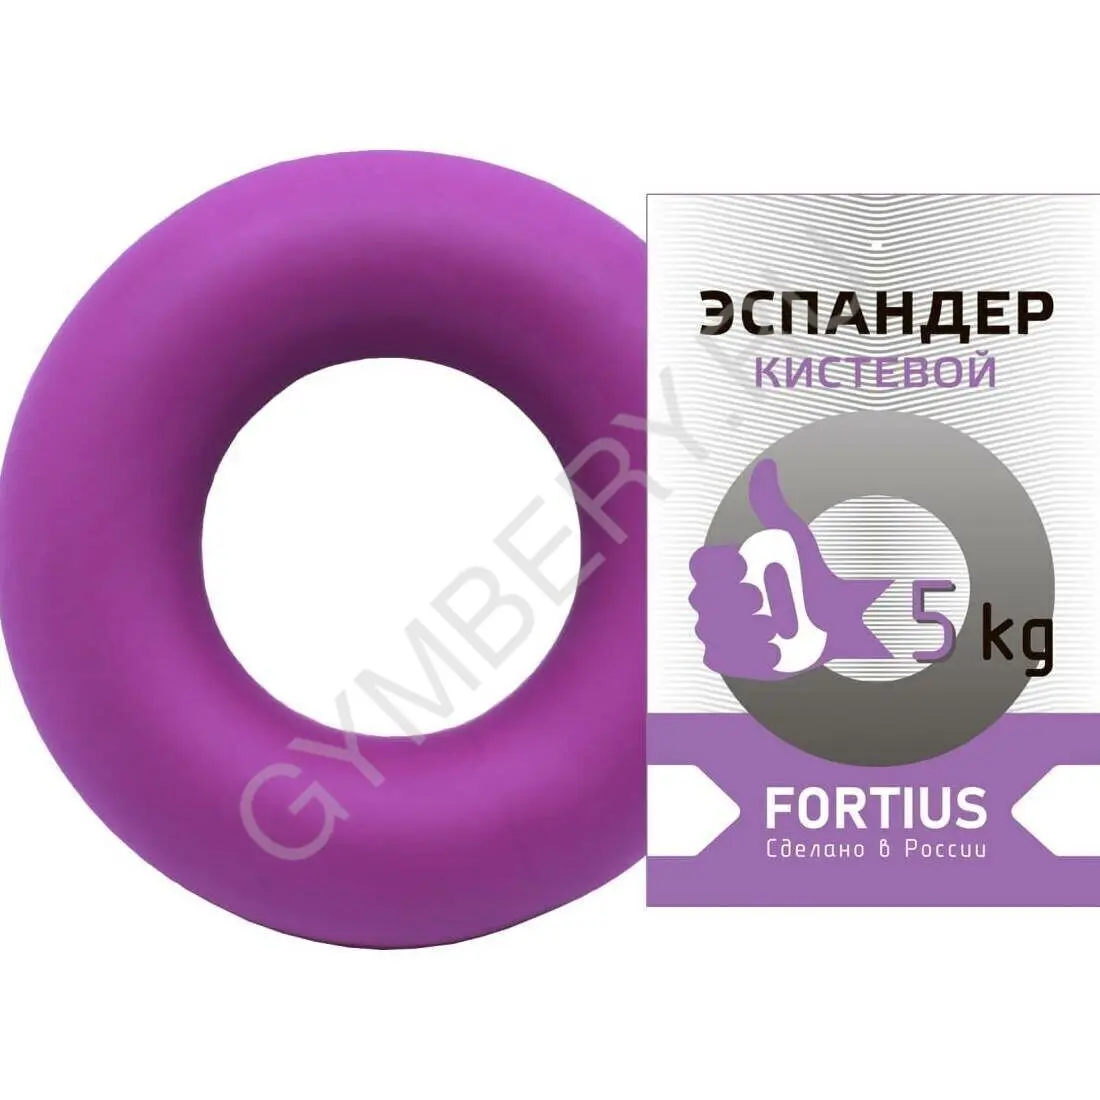 Fortius Эспандер кистевой 5 кг (фиолетовый), арт. H180701-05TP